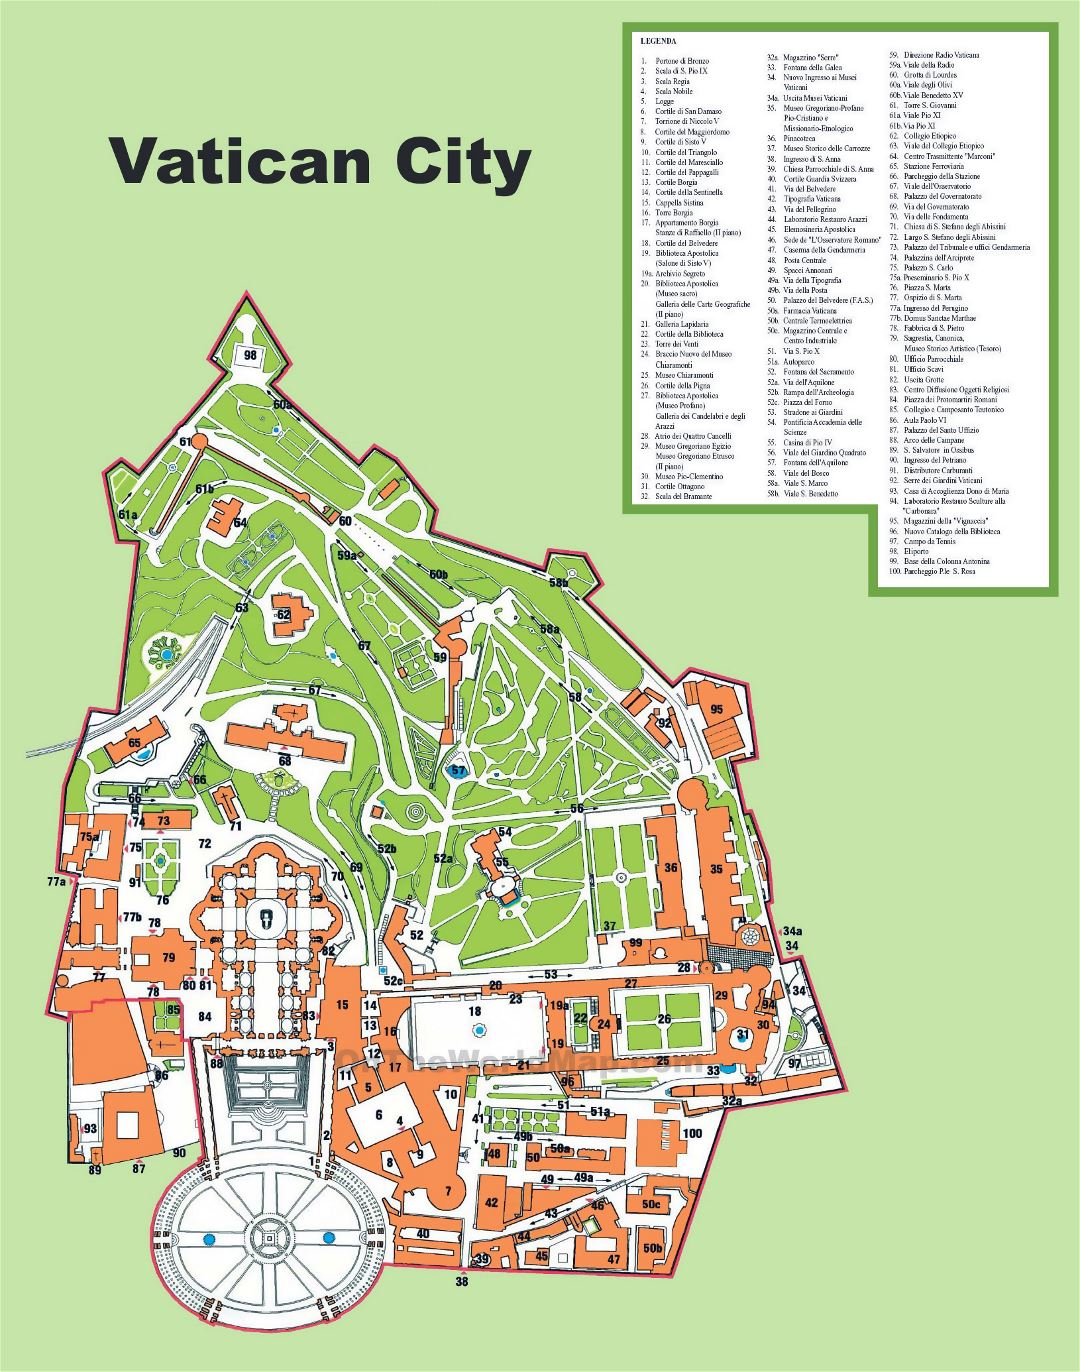 Grande detallado mapa turístico de ciudad del Vaticano